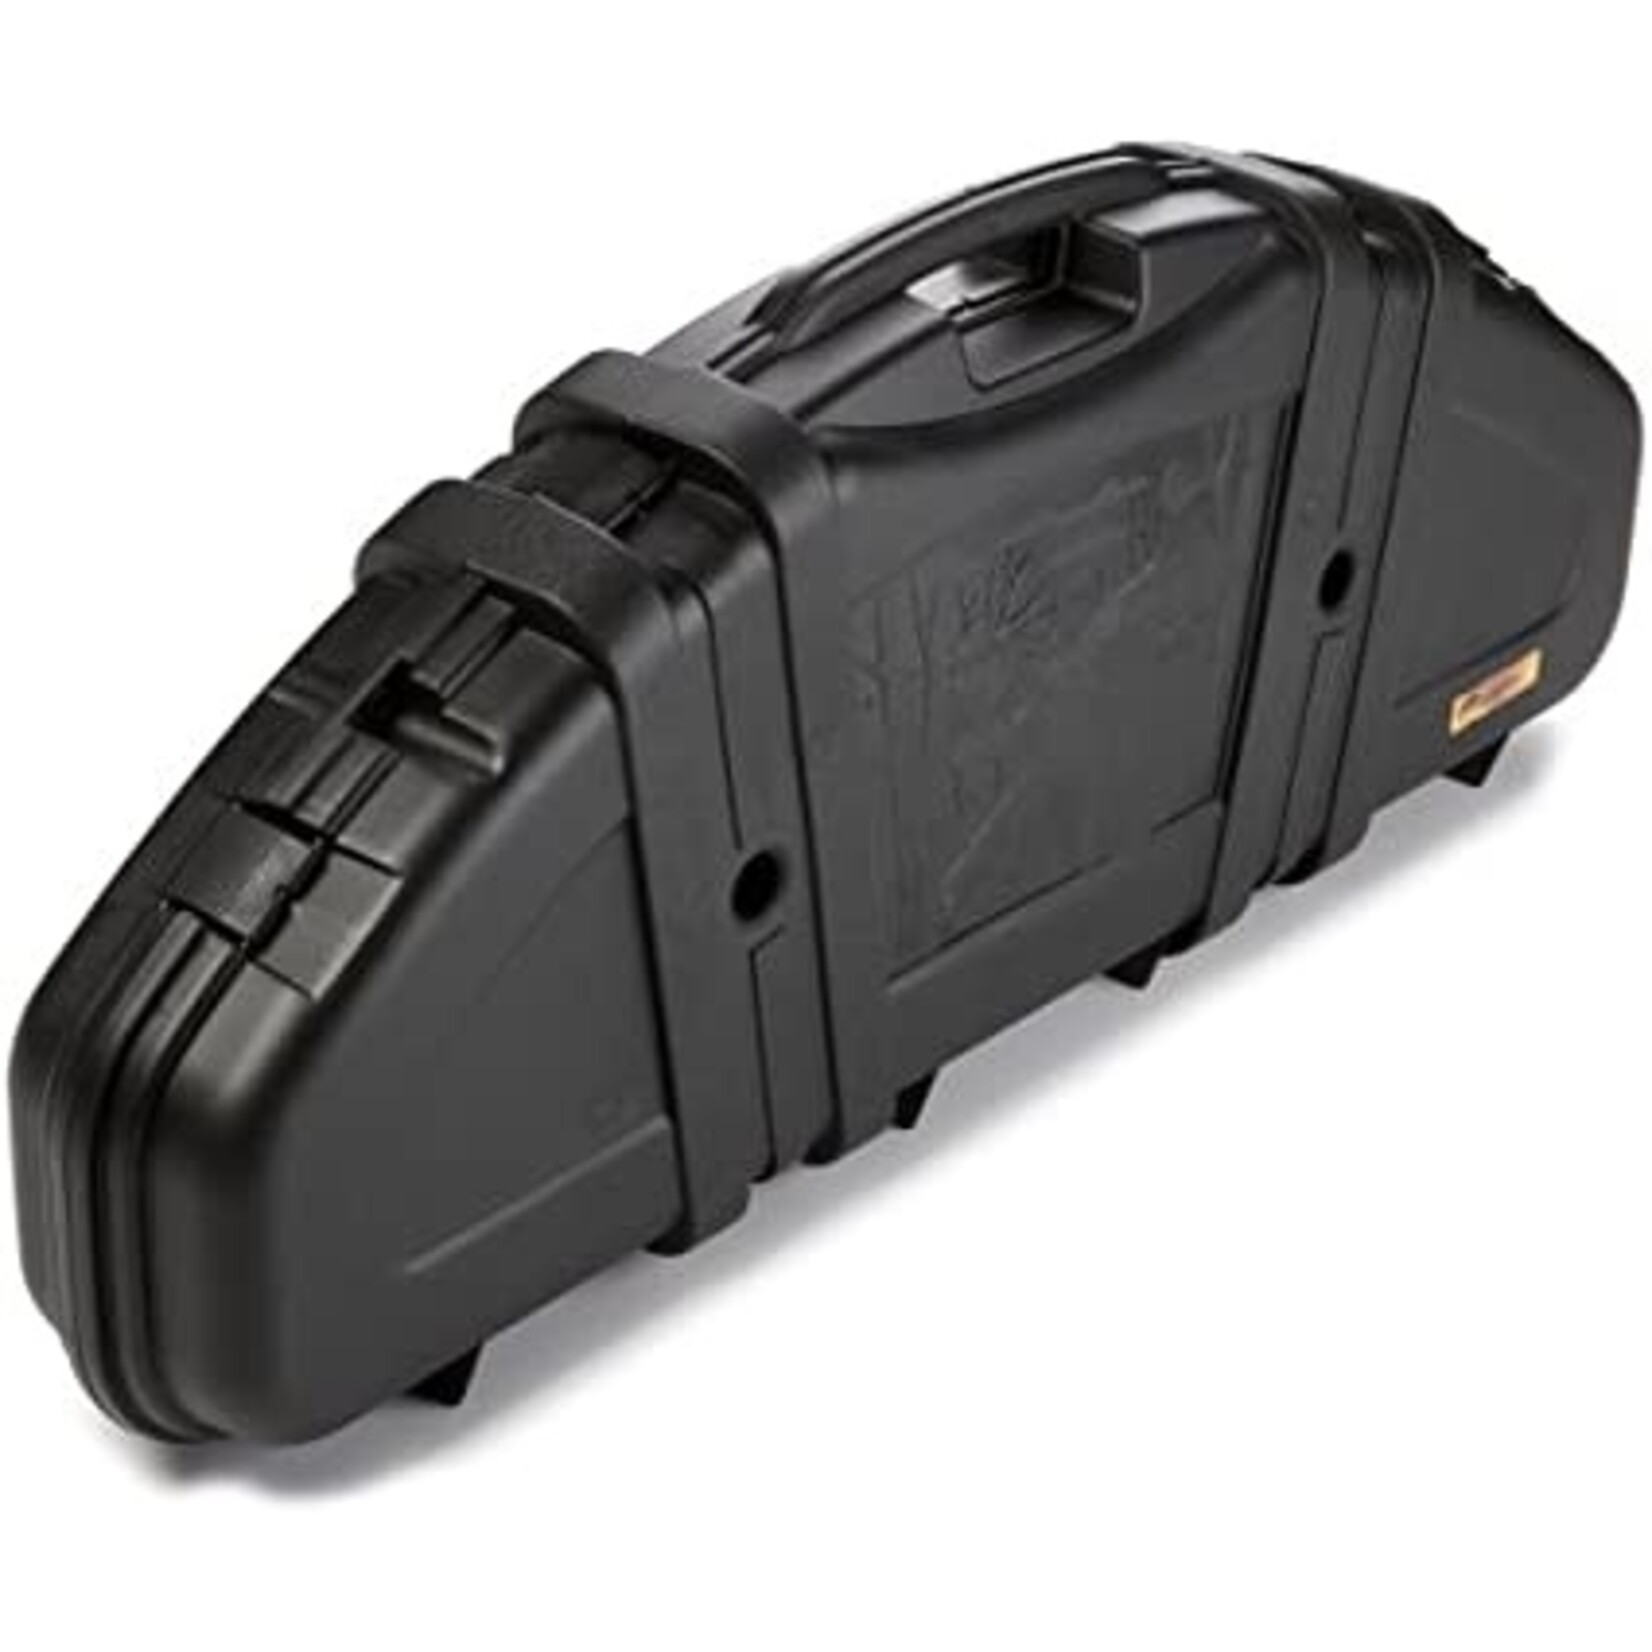 Plano Protector Bow Hard case - Backcountry Supplies